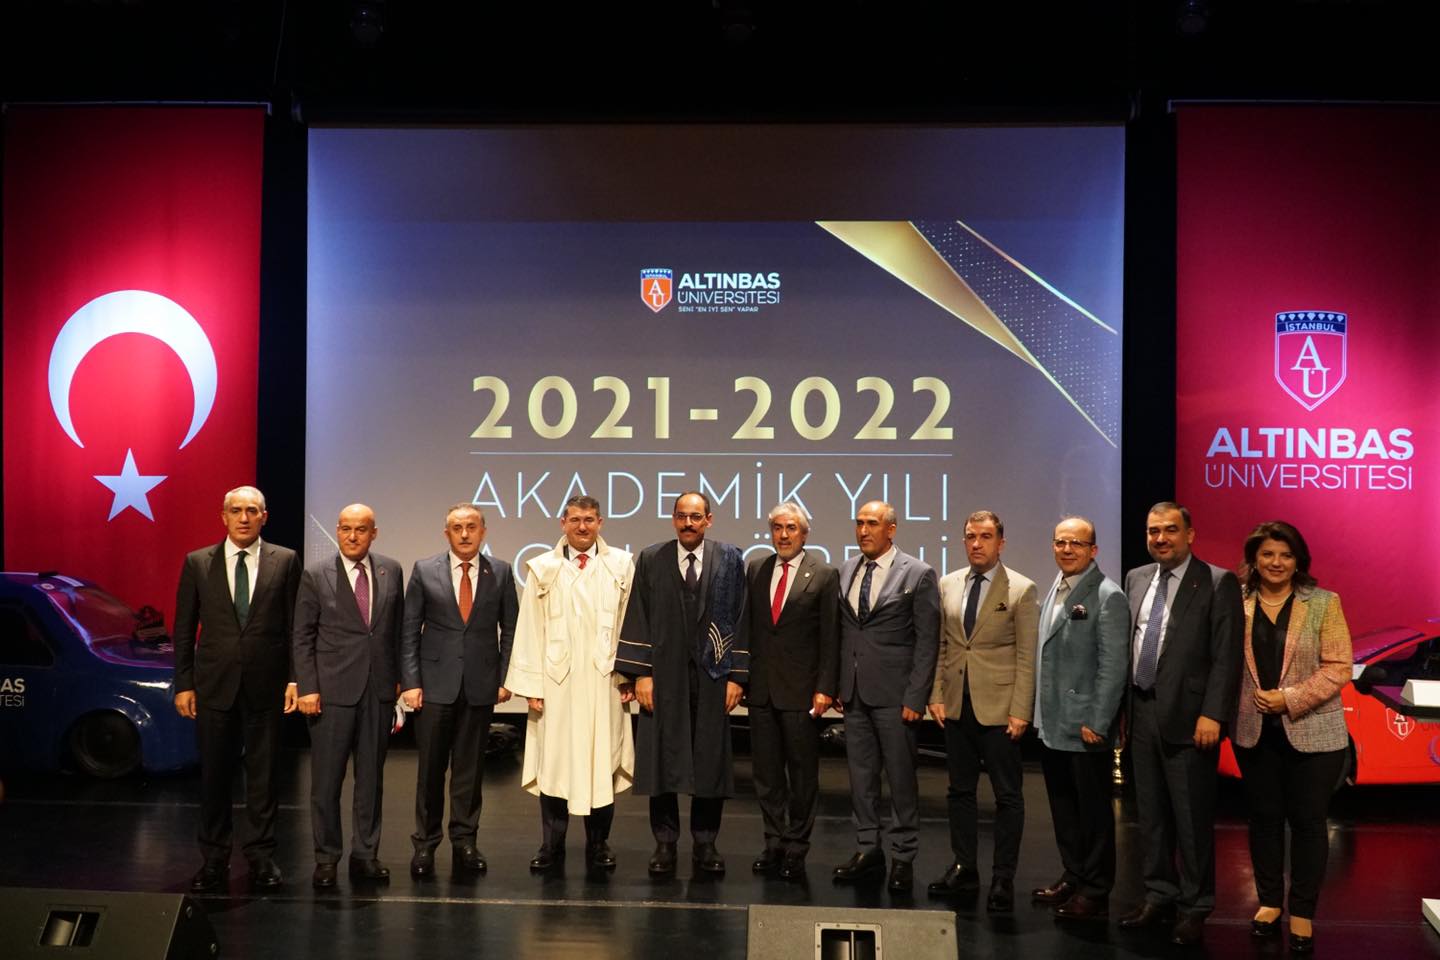 2021-2022 AKADEMİK AÇILIŞ TÖRENİ/ 2021-2022 ACADEMIC YEAR OPENING CEREMONY